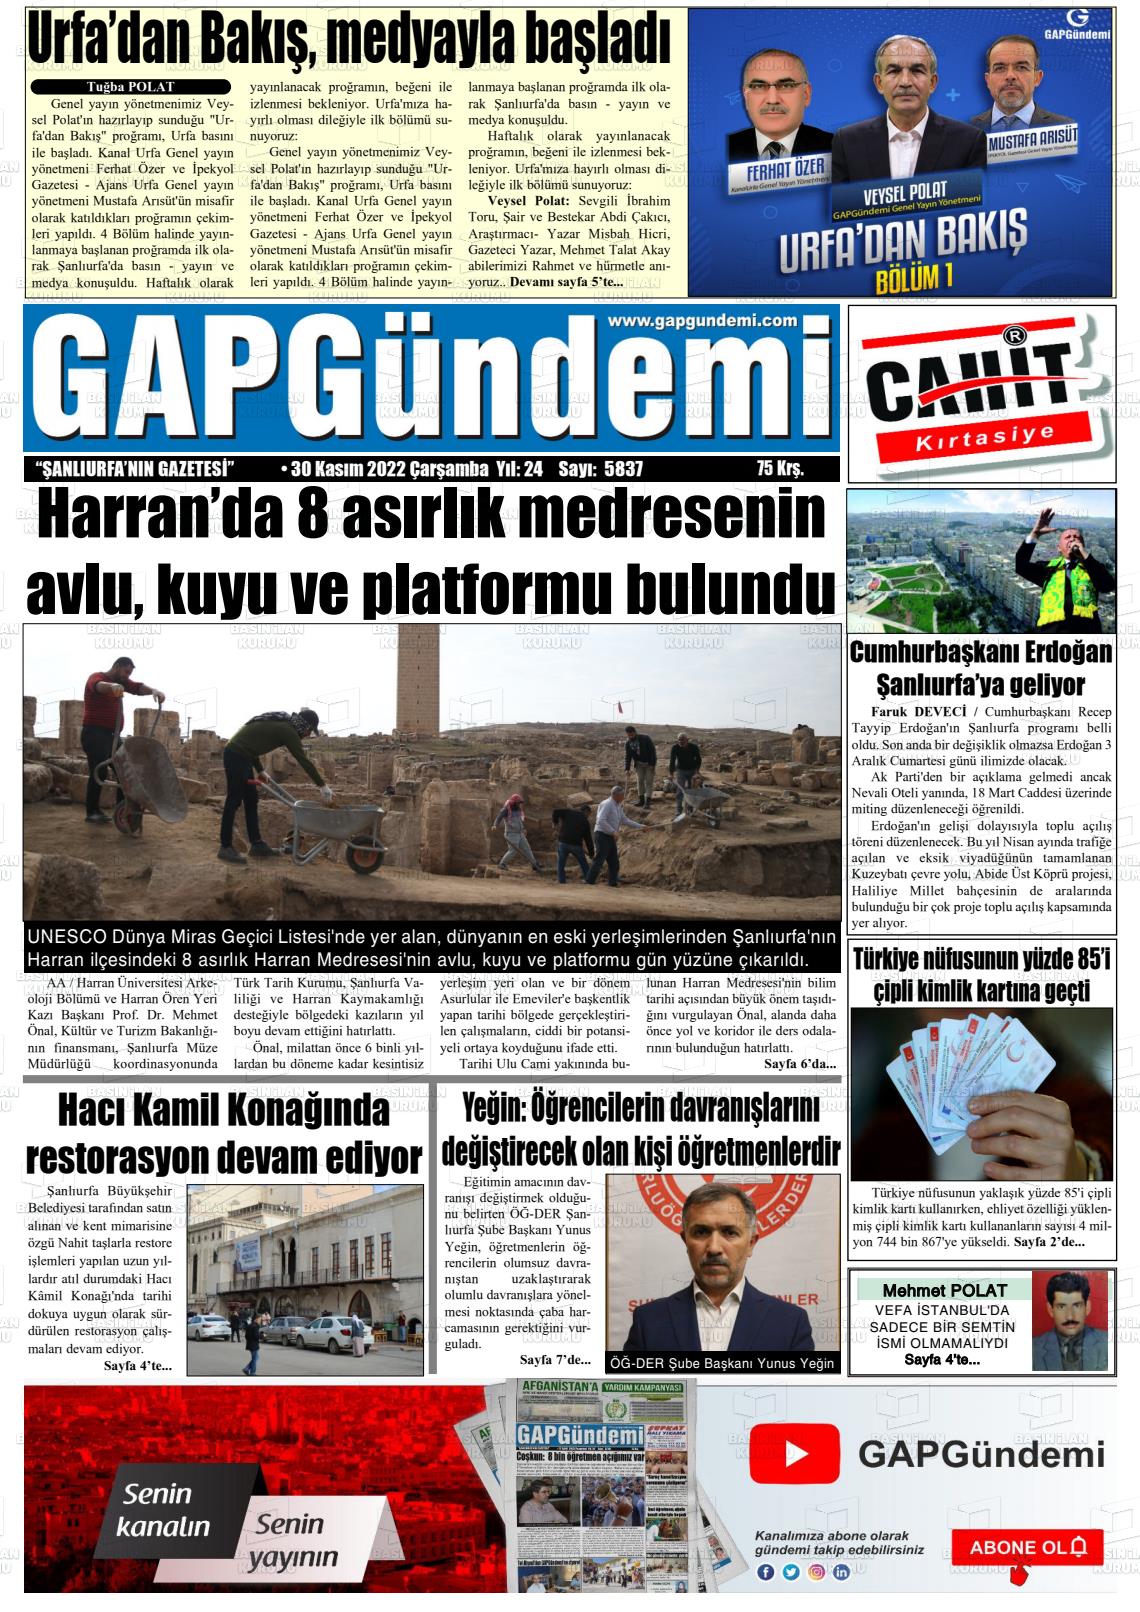 30 Kasım 2022 Gap Gündemi Gazete Manşeti